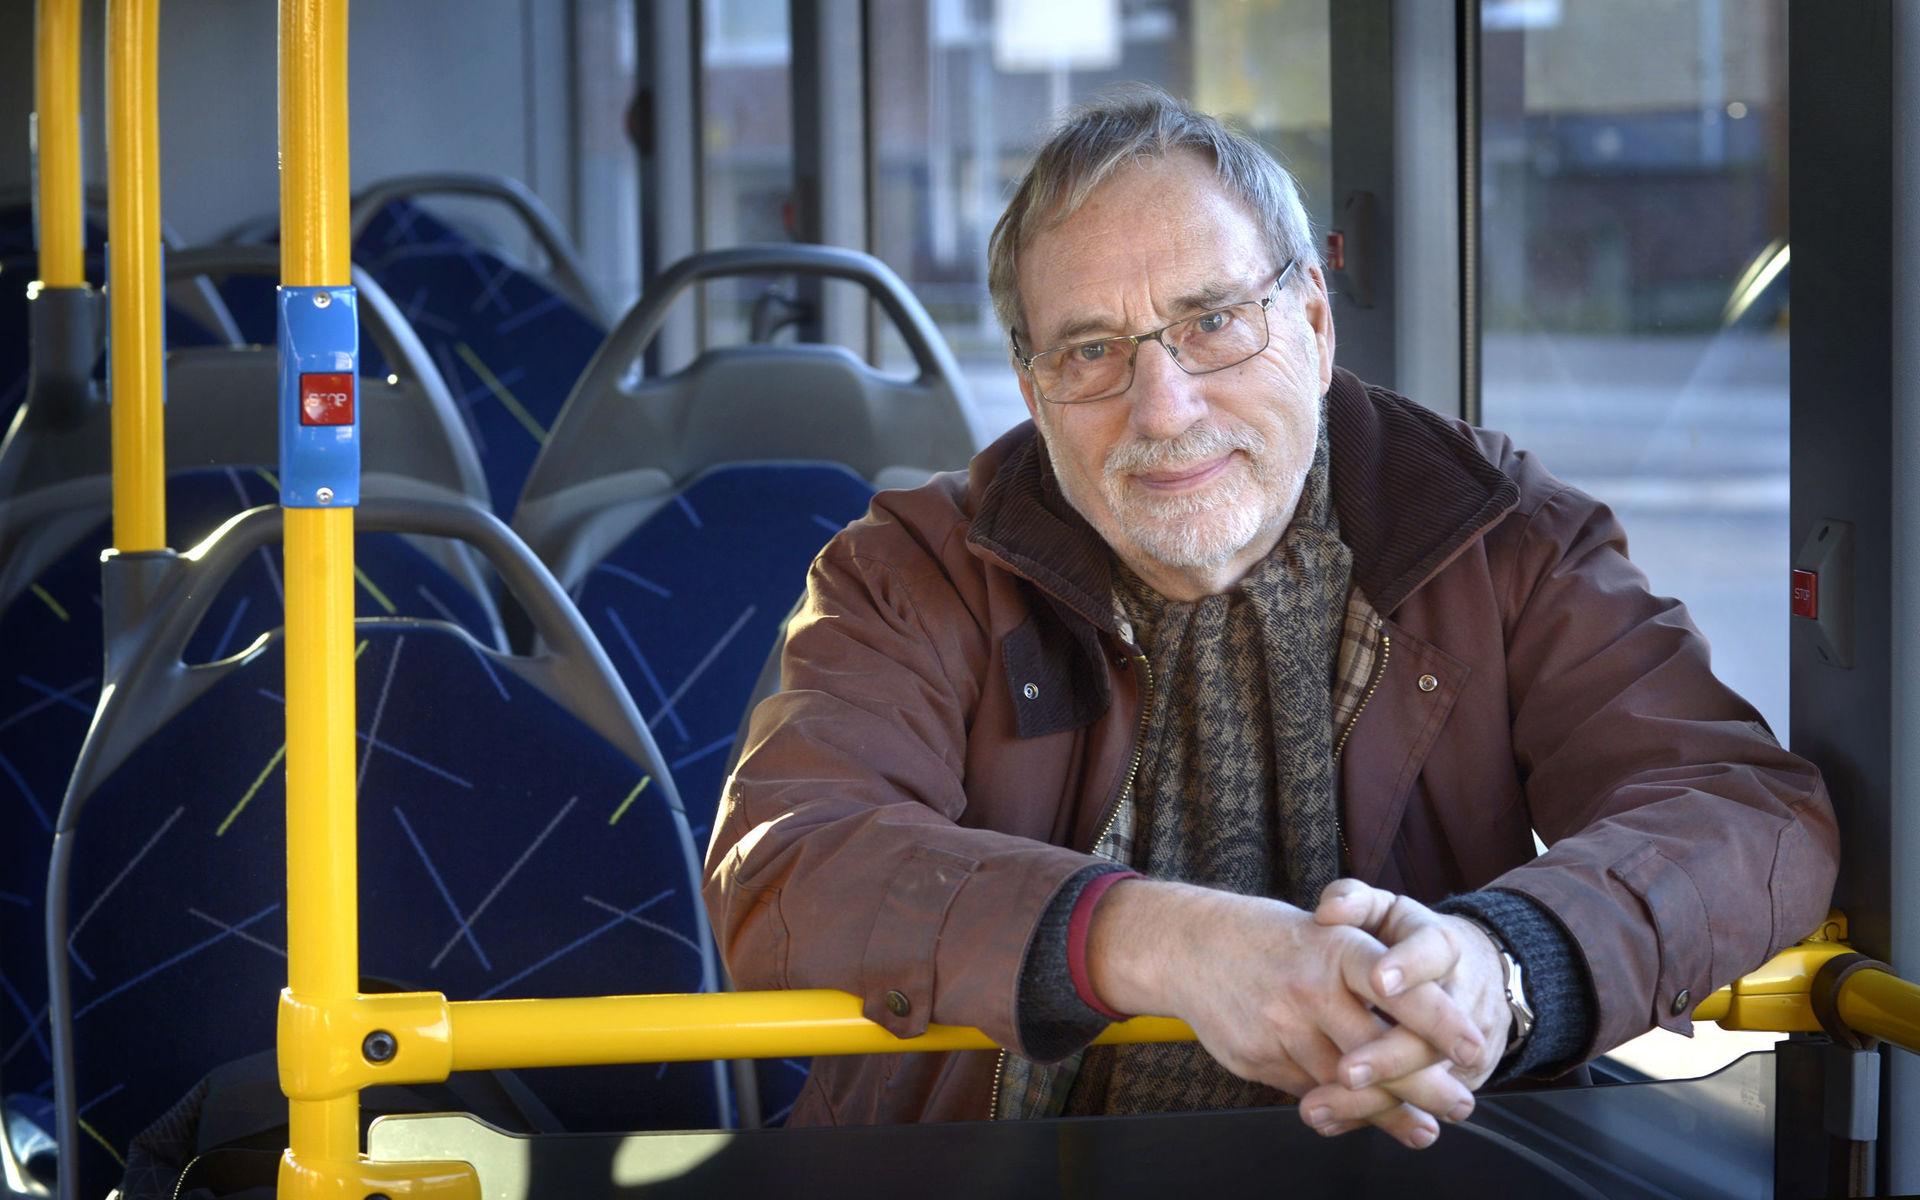 Laddar för buss. När miljömedvetne Ulf fyller 75 år behöver han inte längre betala för sina bussresorna i Varberg. Redan dagen efter sin  födelsedag ska han hämta ut ett seniorkort för Hallandstrafiken. 